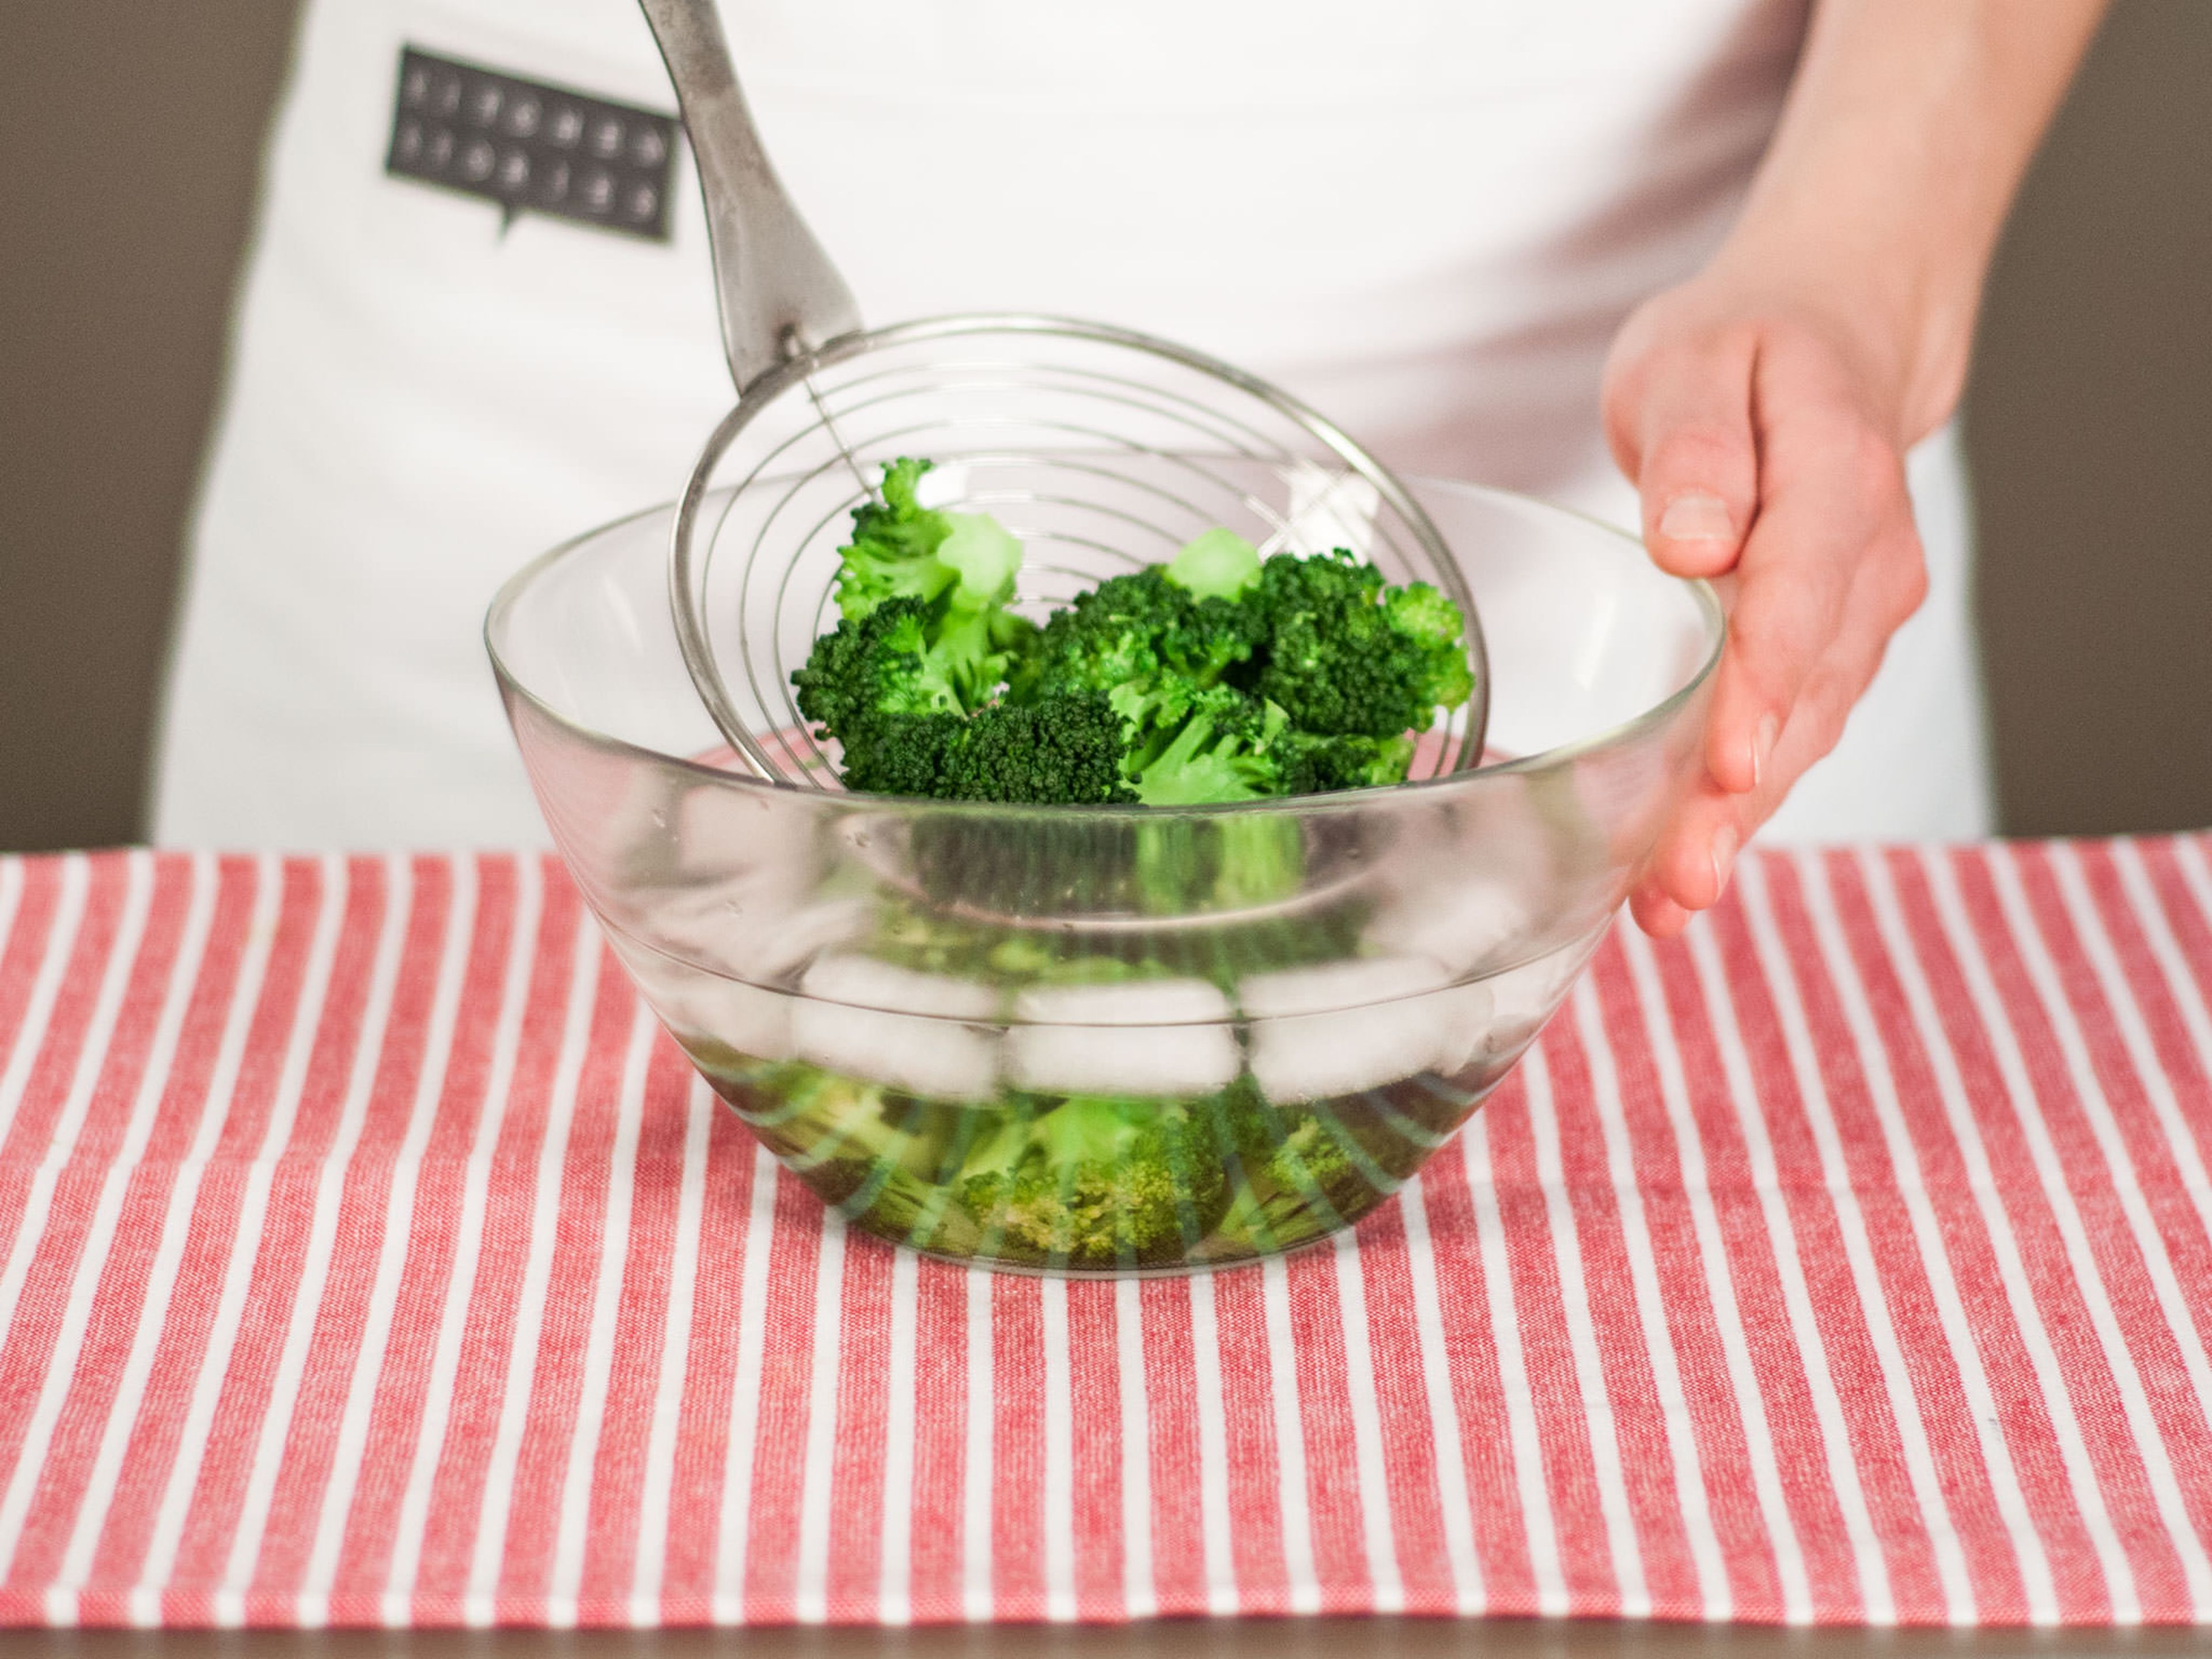 Brokkoli direkt in eine Schüssel geben, die mit kaltem Wasser und Eiswürfeln gefüllt ist. Für ca. 1 – 2 Min. abkühlen lassen. Abgießen und beiseitestellen.